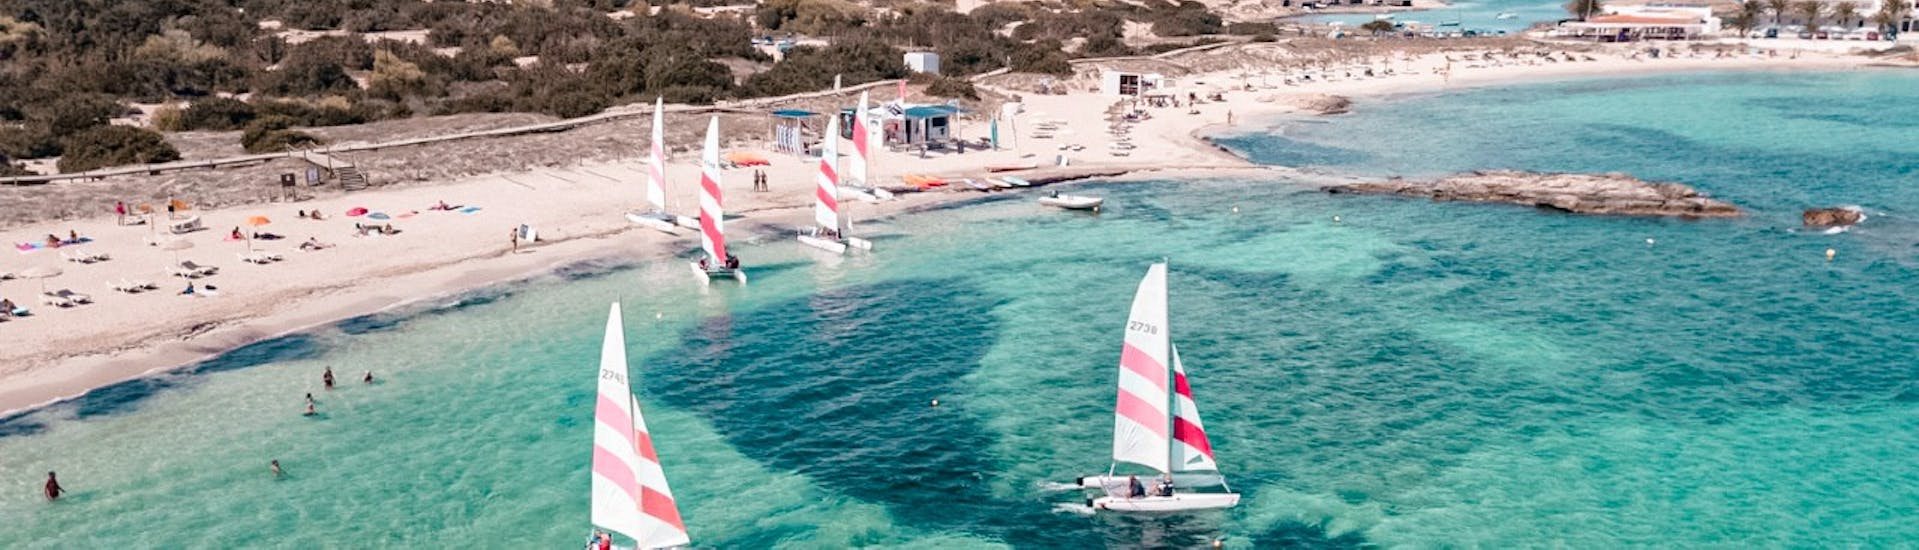 Segelbootverleih auf Formentera (bis zu 3 Personen) ohne Führerschein.